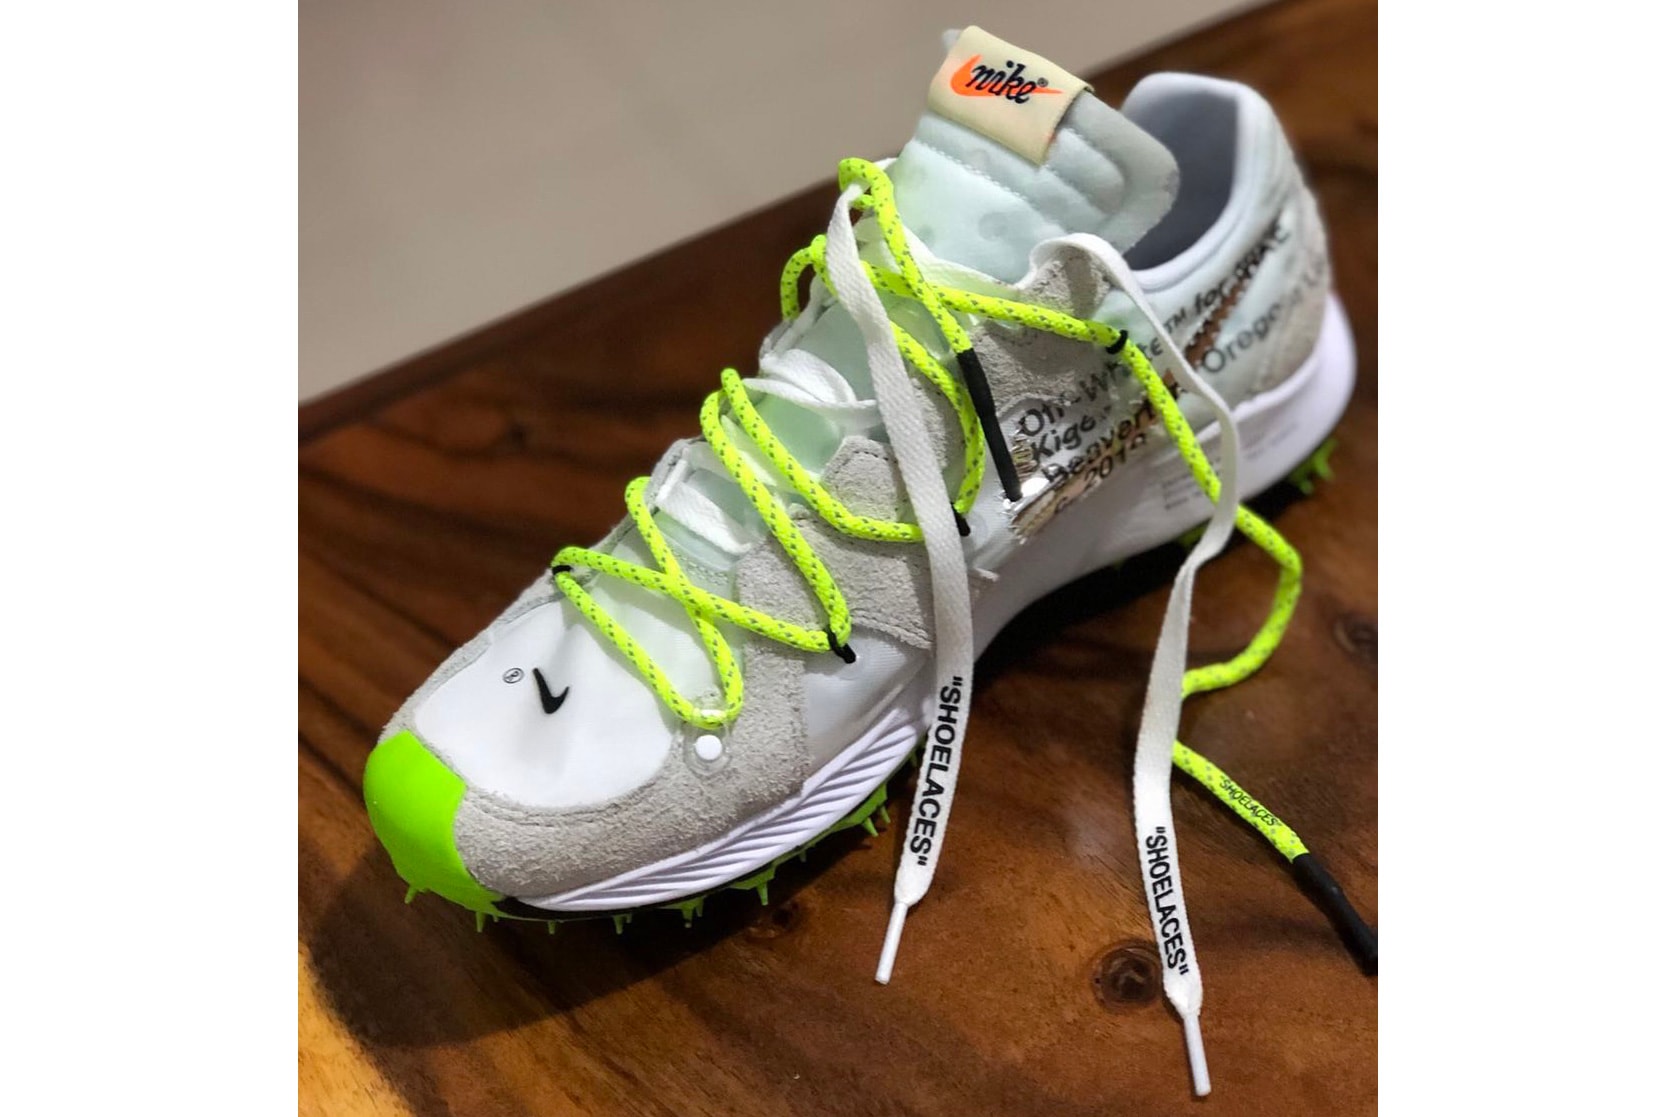 オフホワイト x ナイキ Off-White™ x Nike 2019 Sneakers, Better Look Virgil Abloh Coachella white grey glow in the dark neon green yellow swoosh